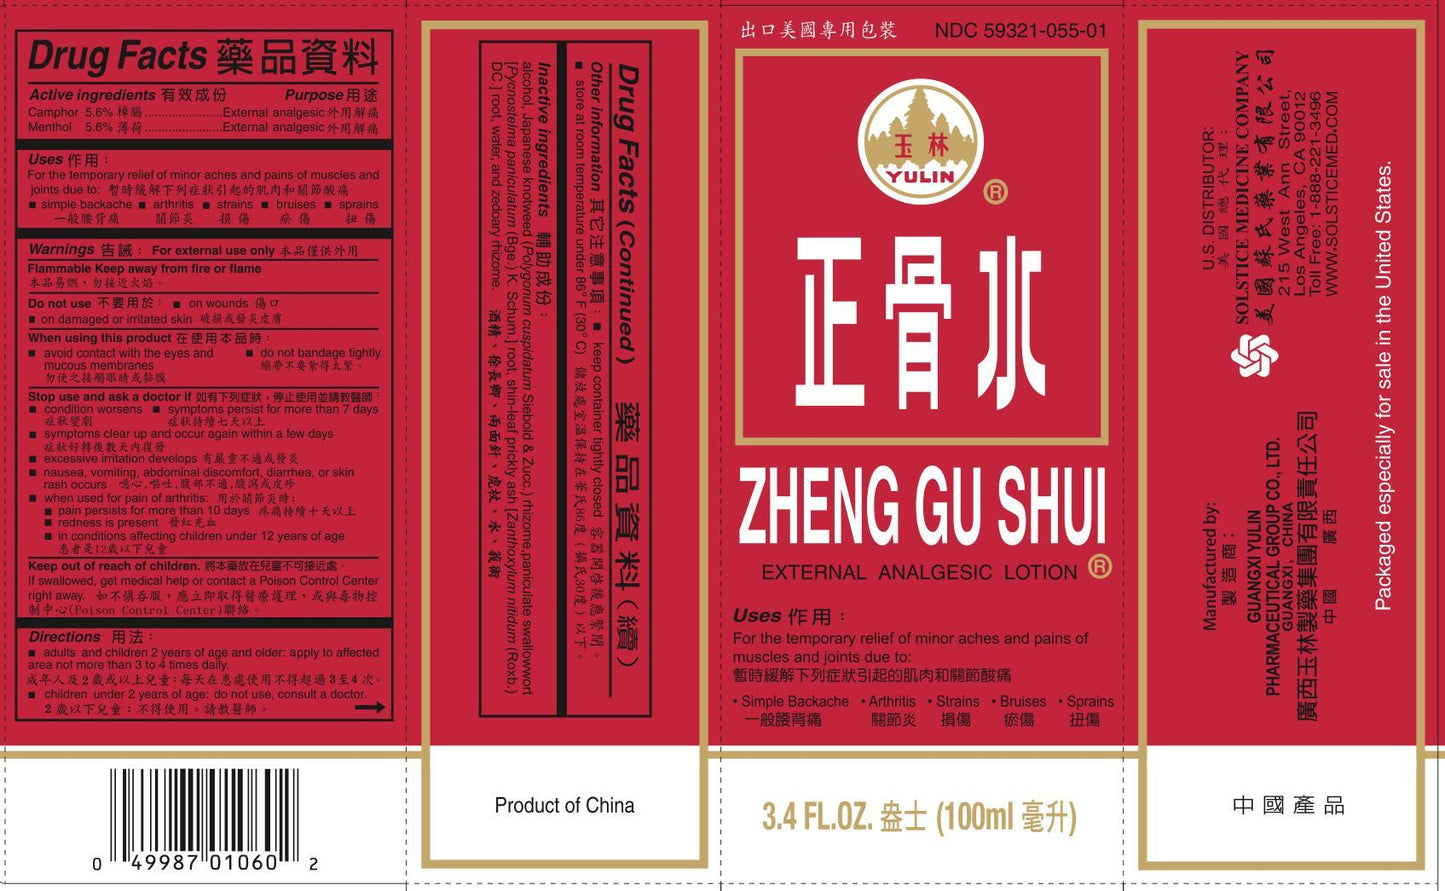 Zheng Gu Shui (3 oz Roll-on)